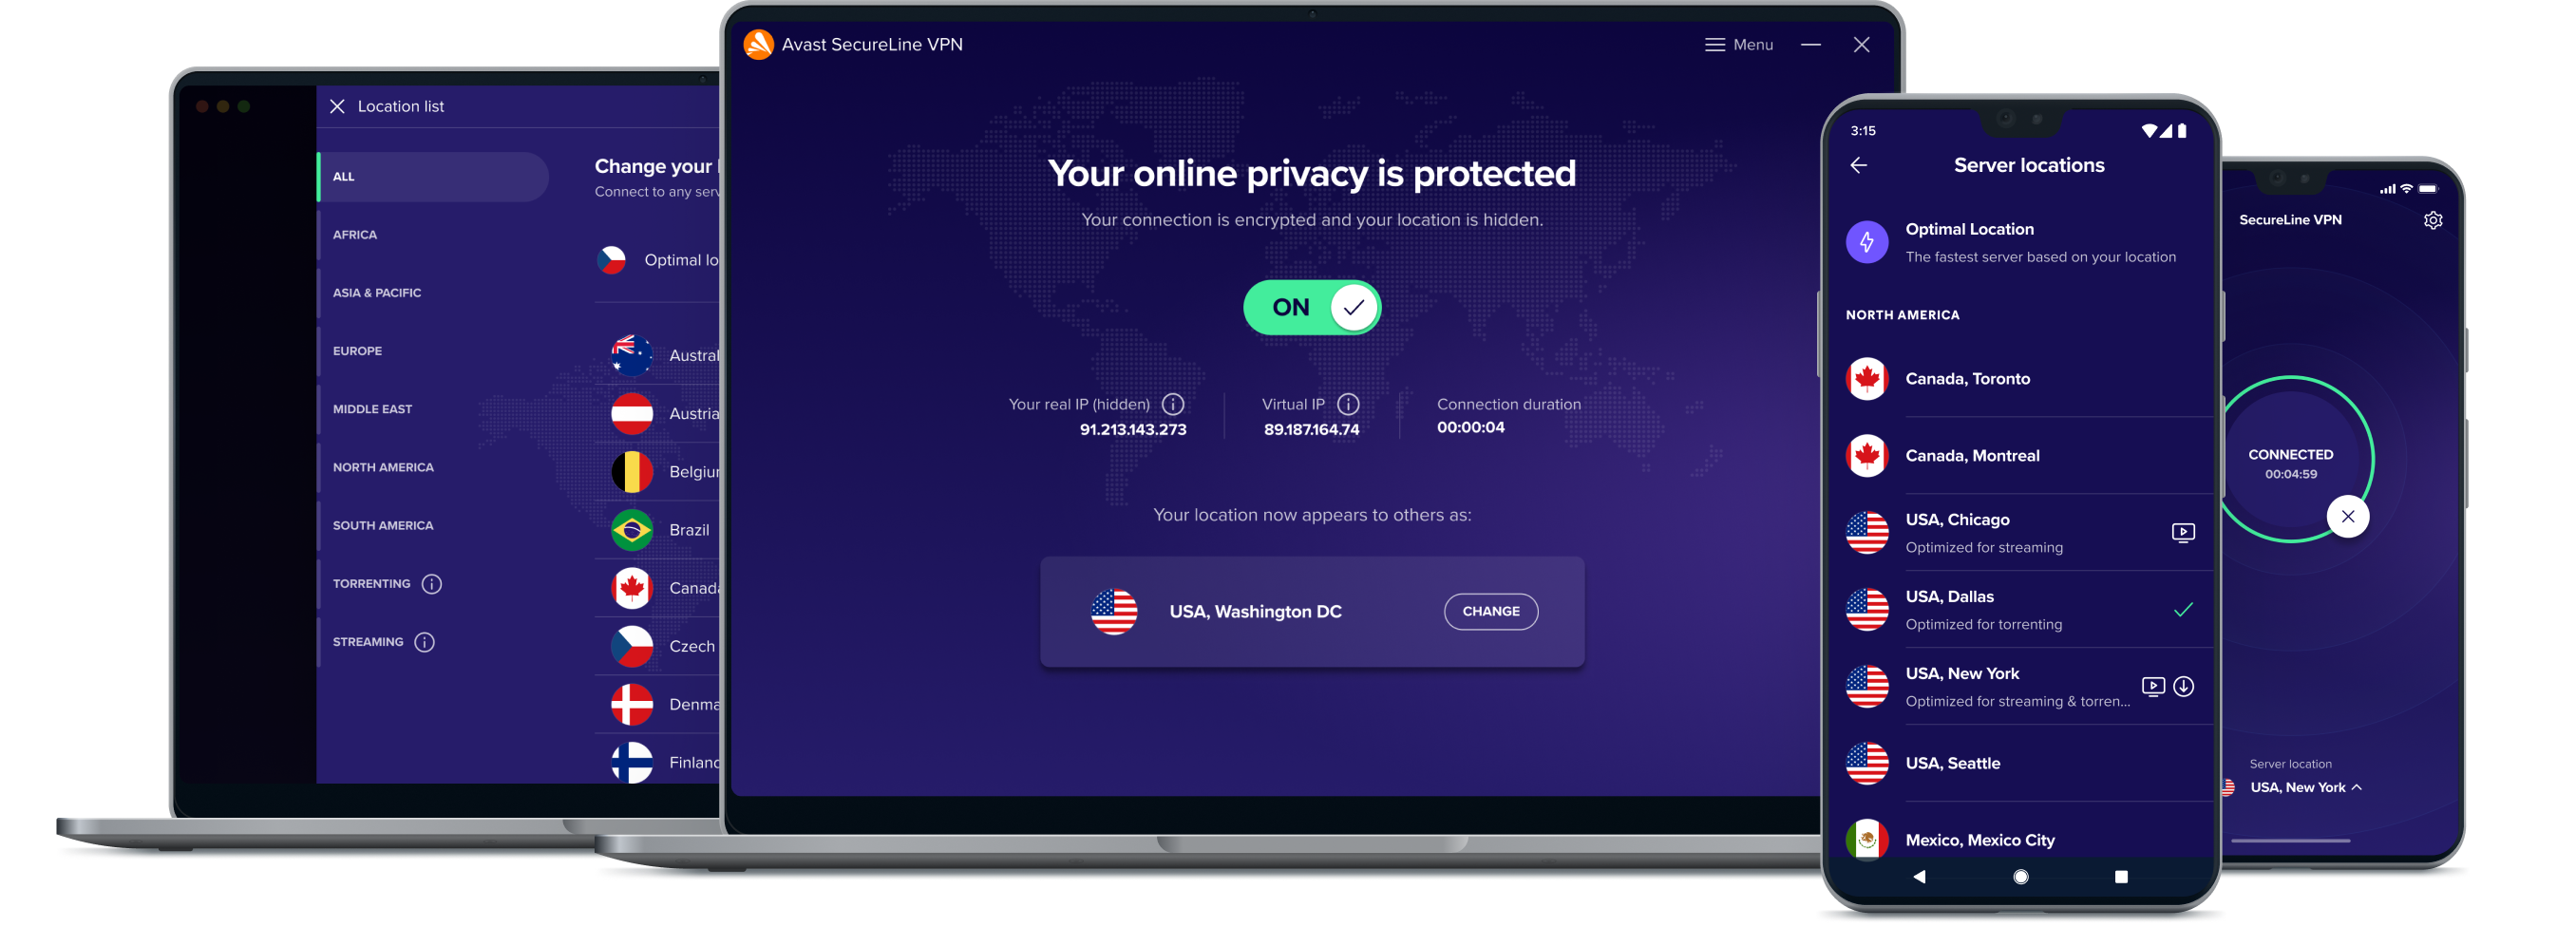 VPN-palvelumme antaa lisää vapautta verkossa